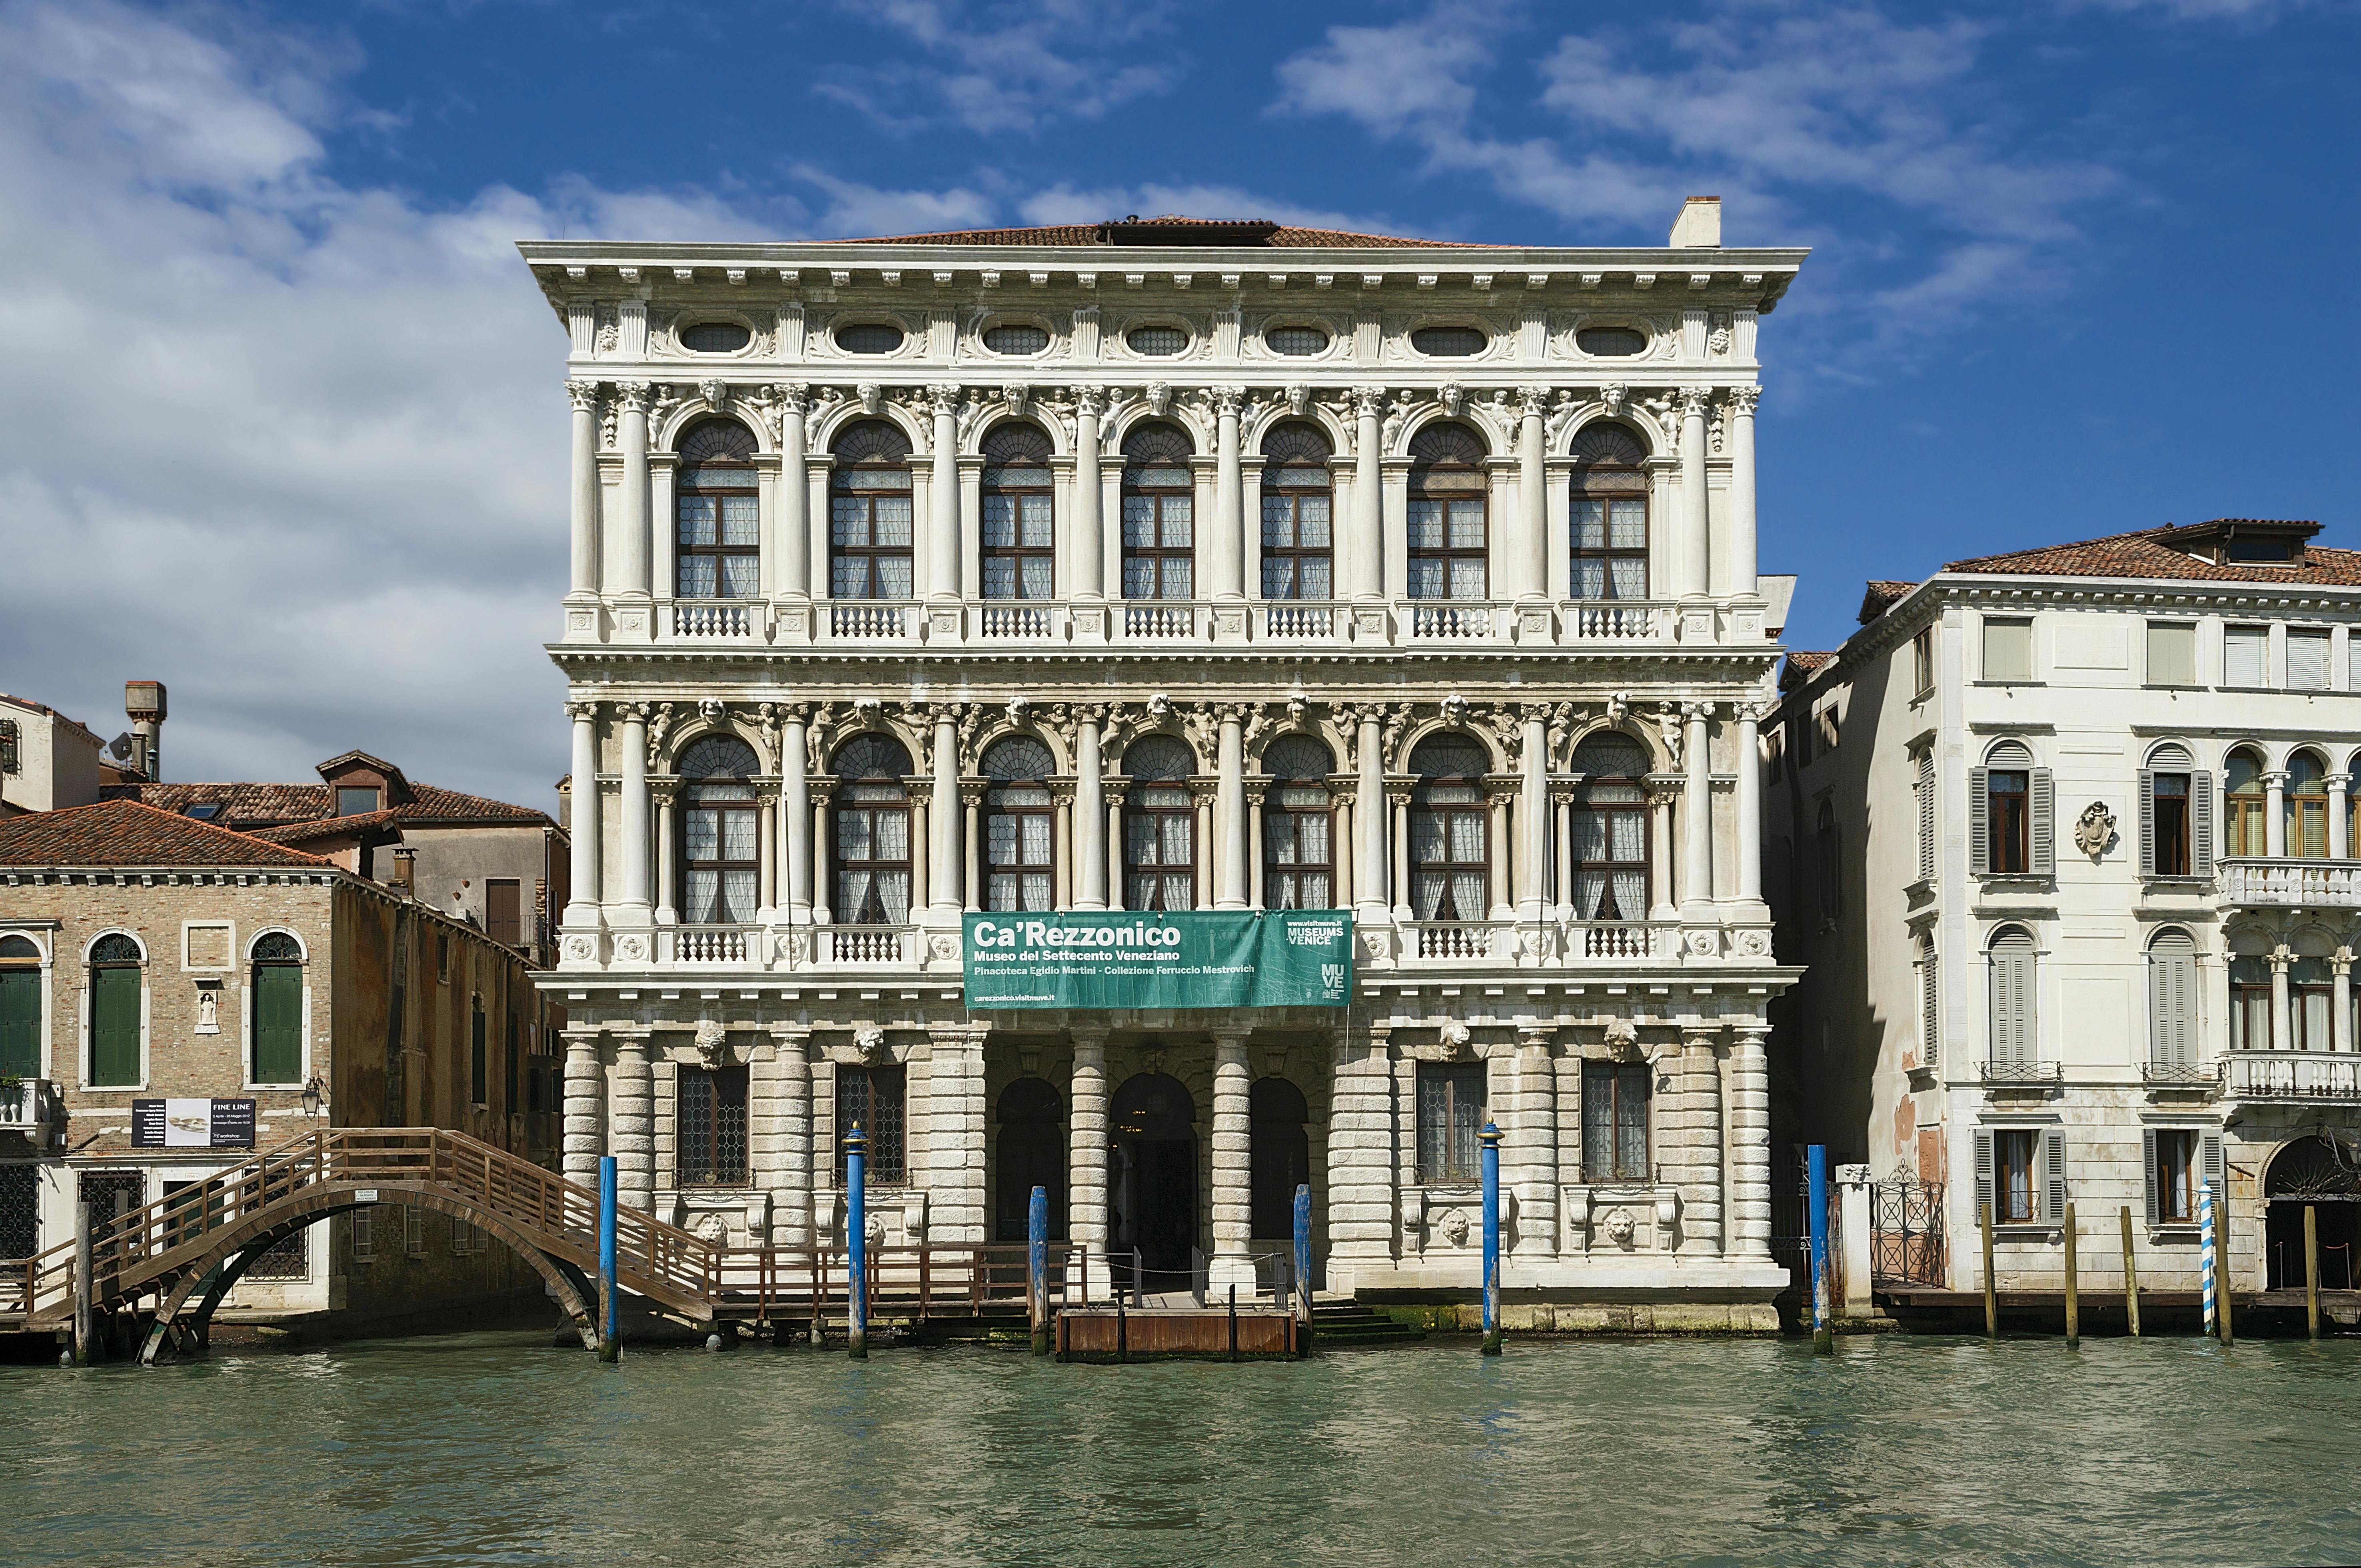 Ca' Rezzonico 18e-eeuwse toegangskaarten voor het Venetië Museum